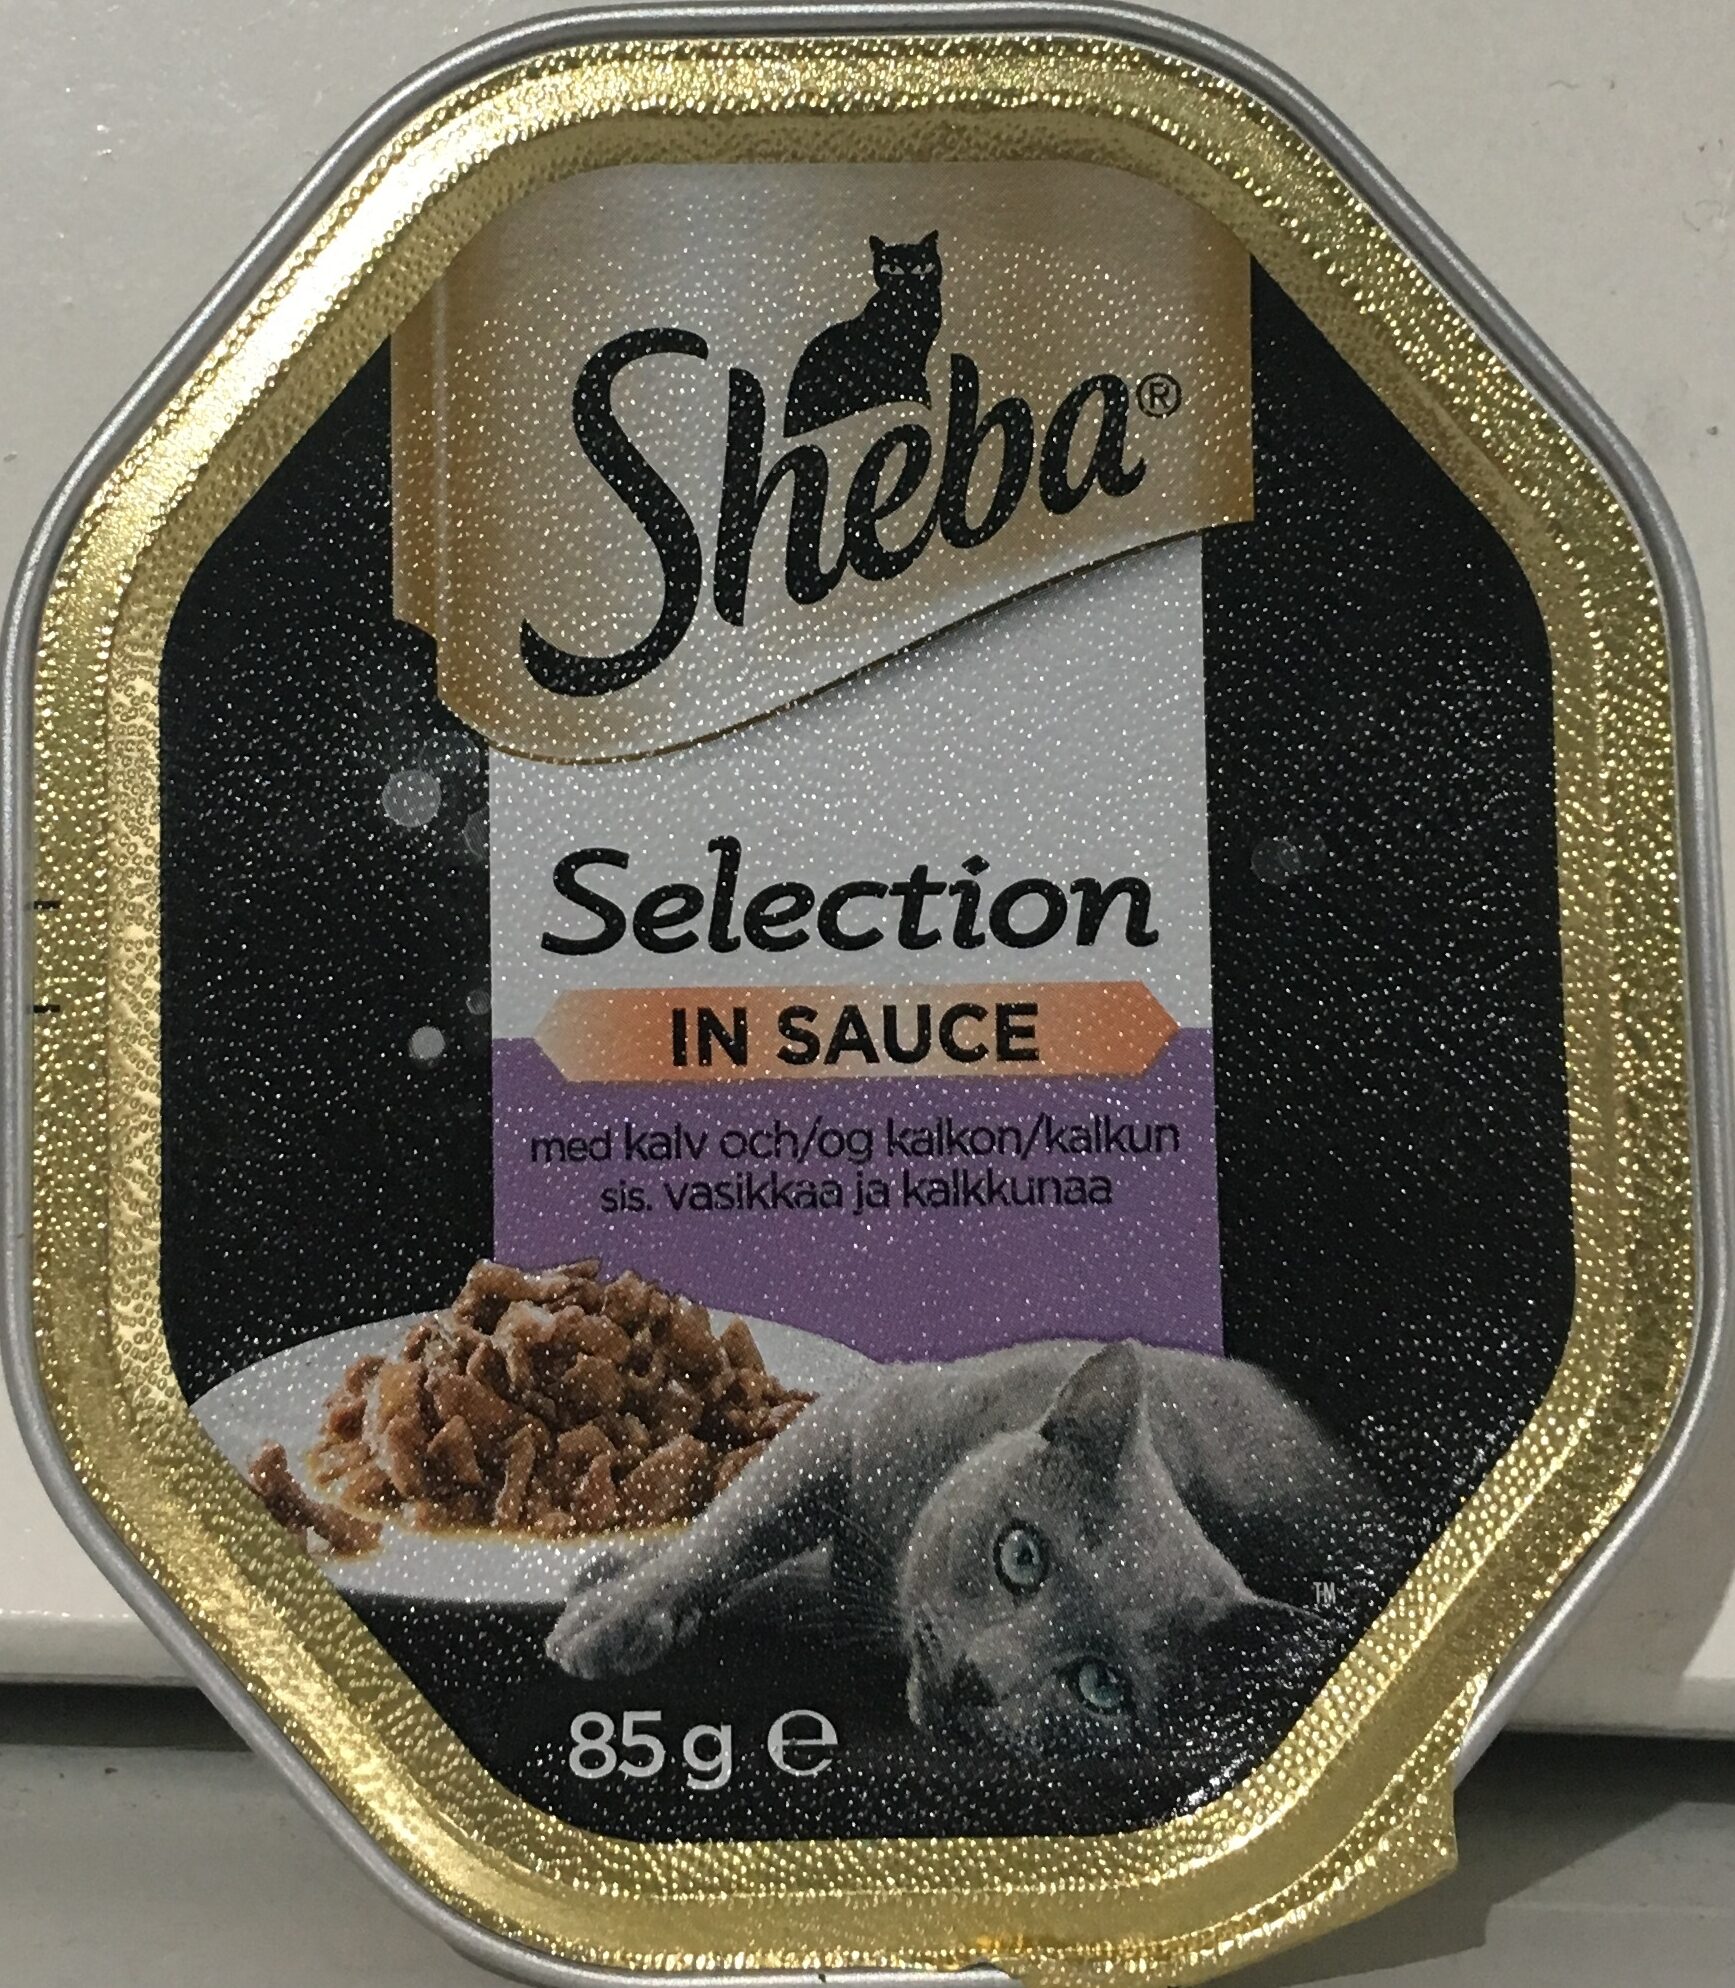 Selection in Sauce med kalv og kalkun - Product - nb